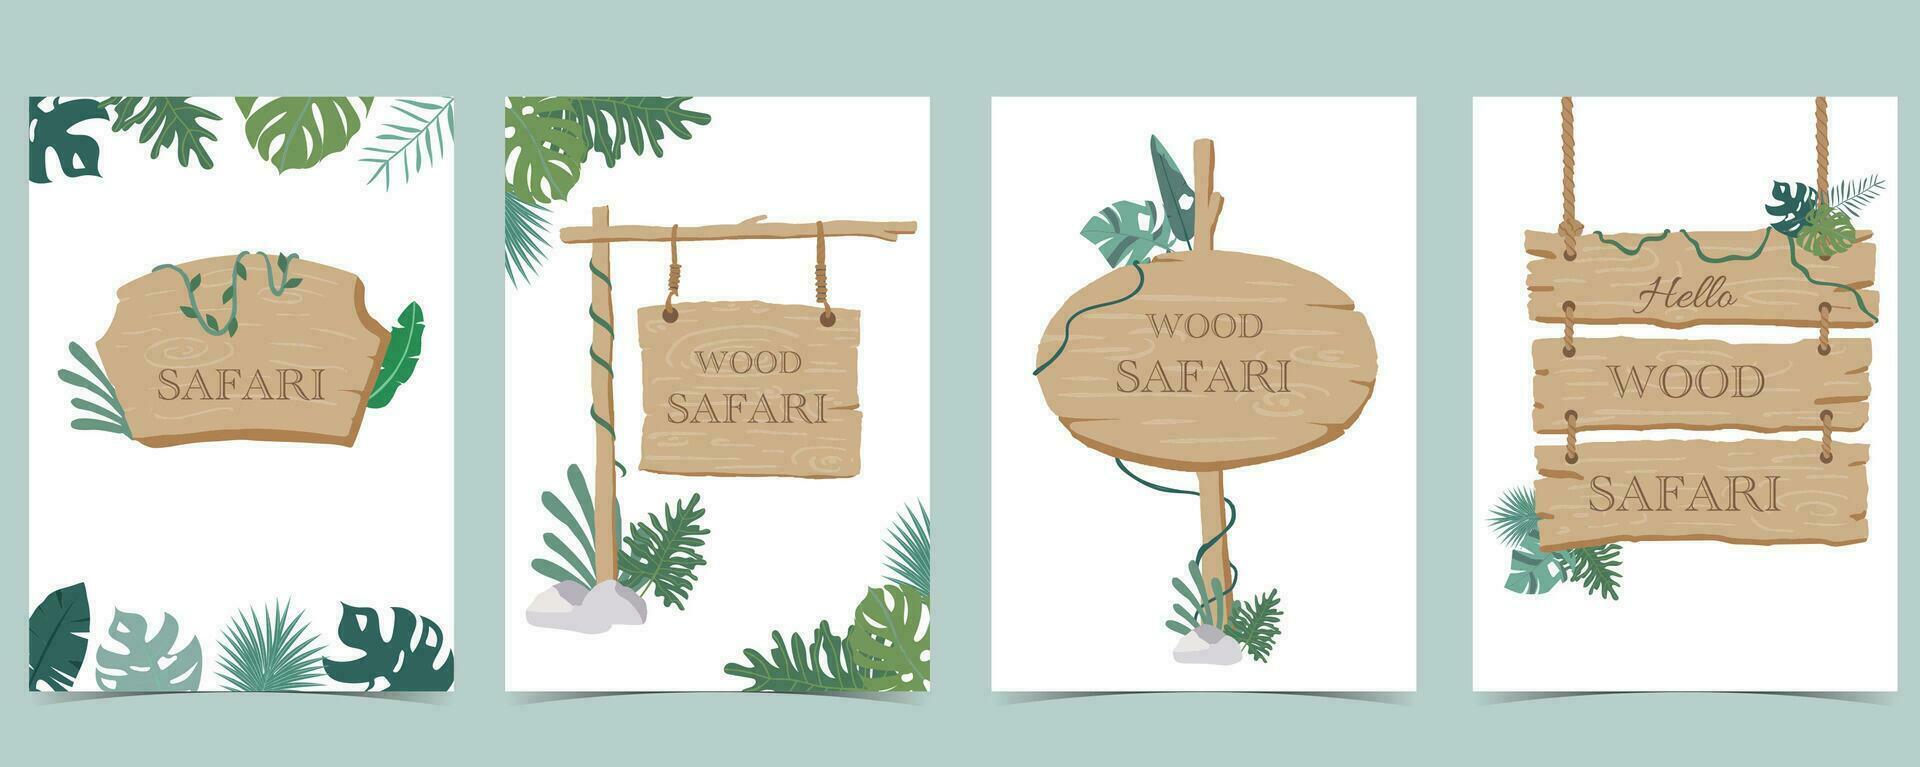 madera marco colección de safari antecedentes set.editable vector ilustración para cumpleaños invitación,postal y pegatina